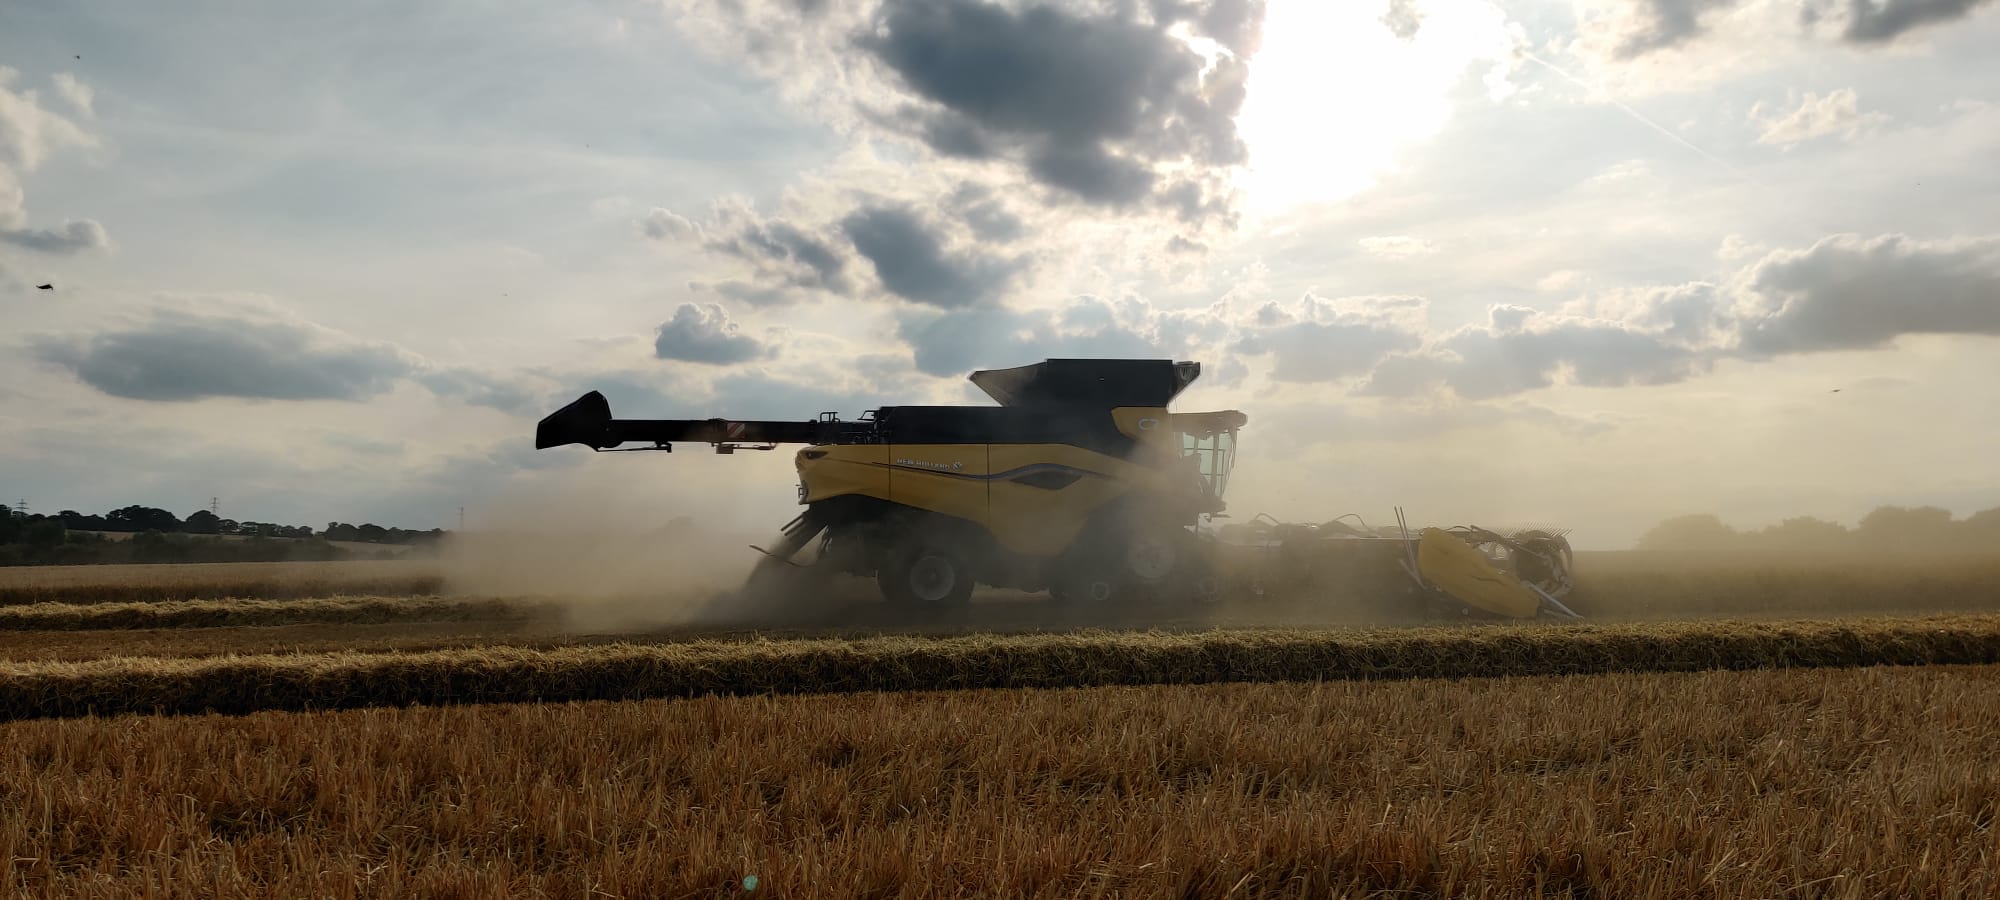 New Holland presenteert officieel CR10 maaidorser | LandbouwMechanisatie